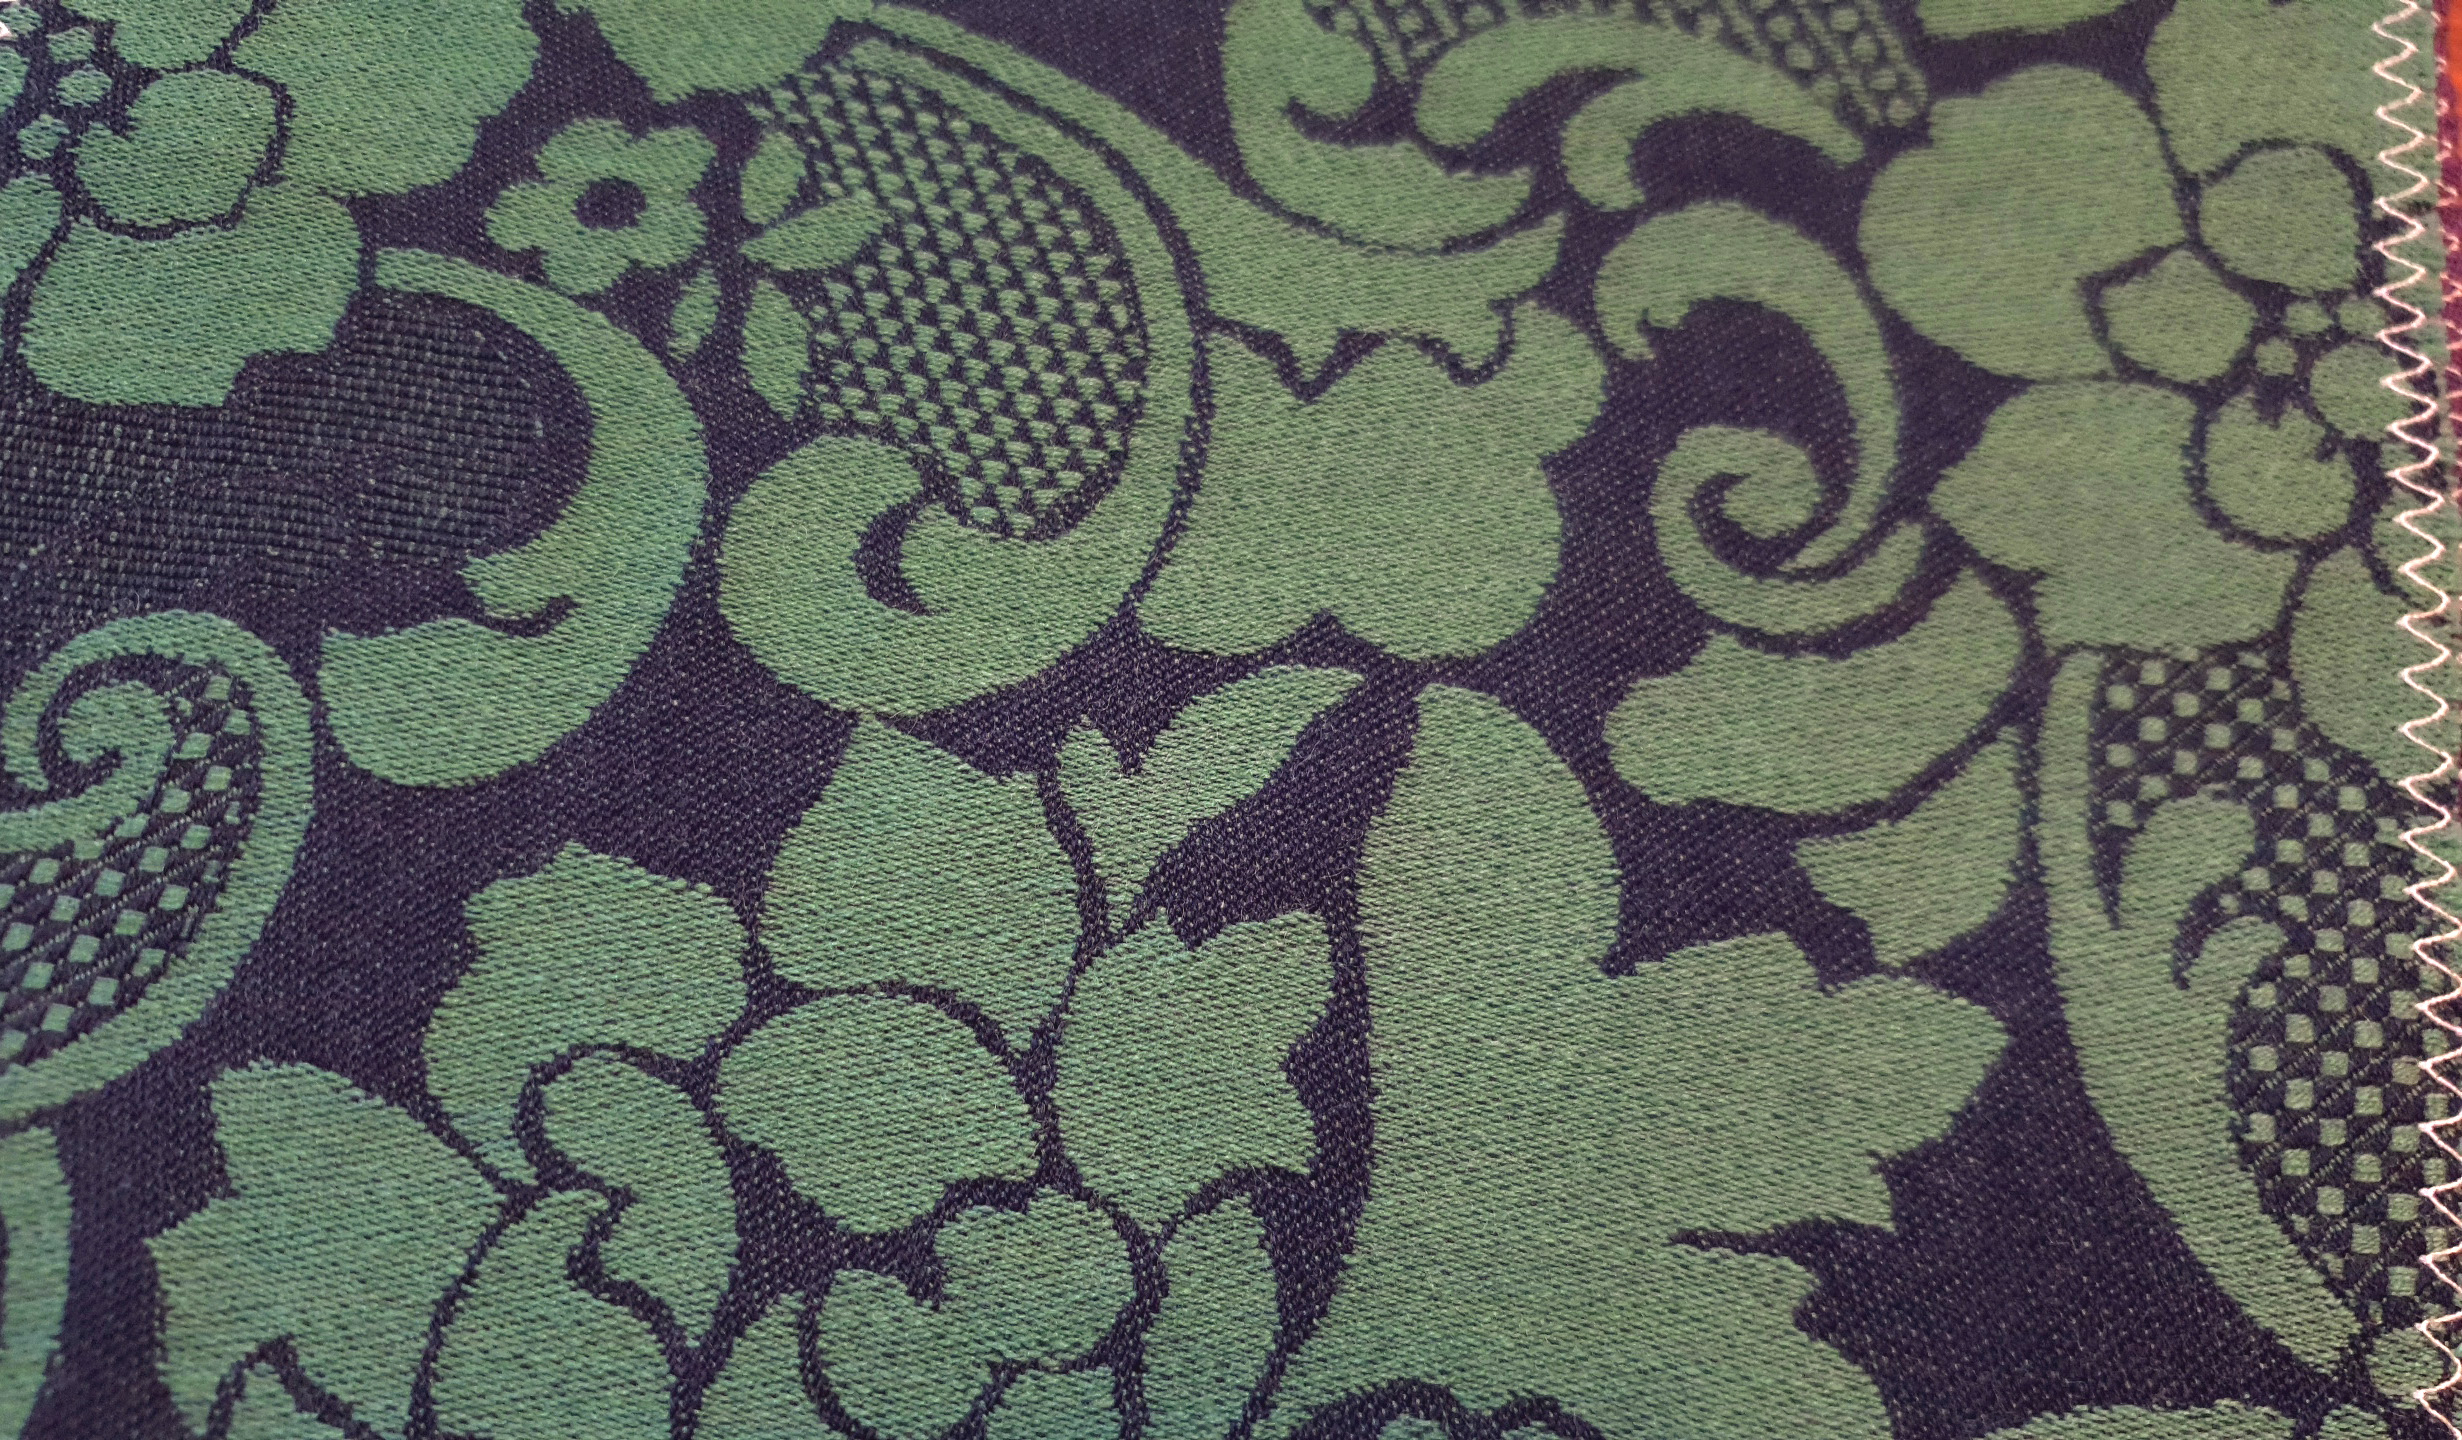 Fabric swatch- Wool damask